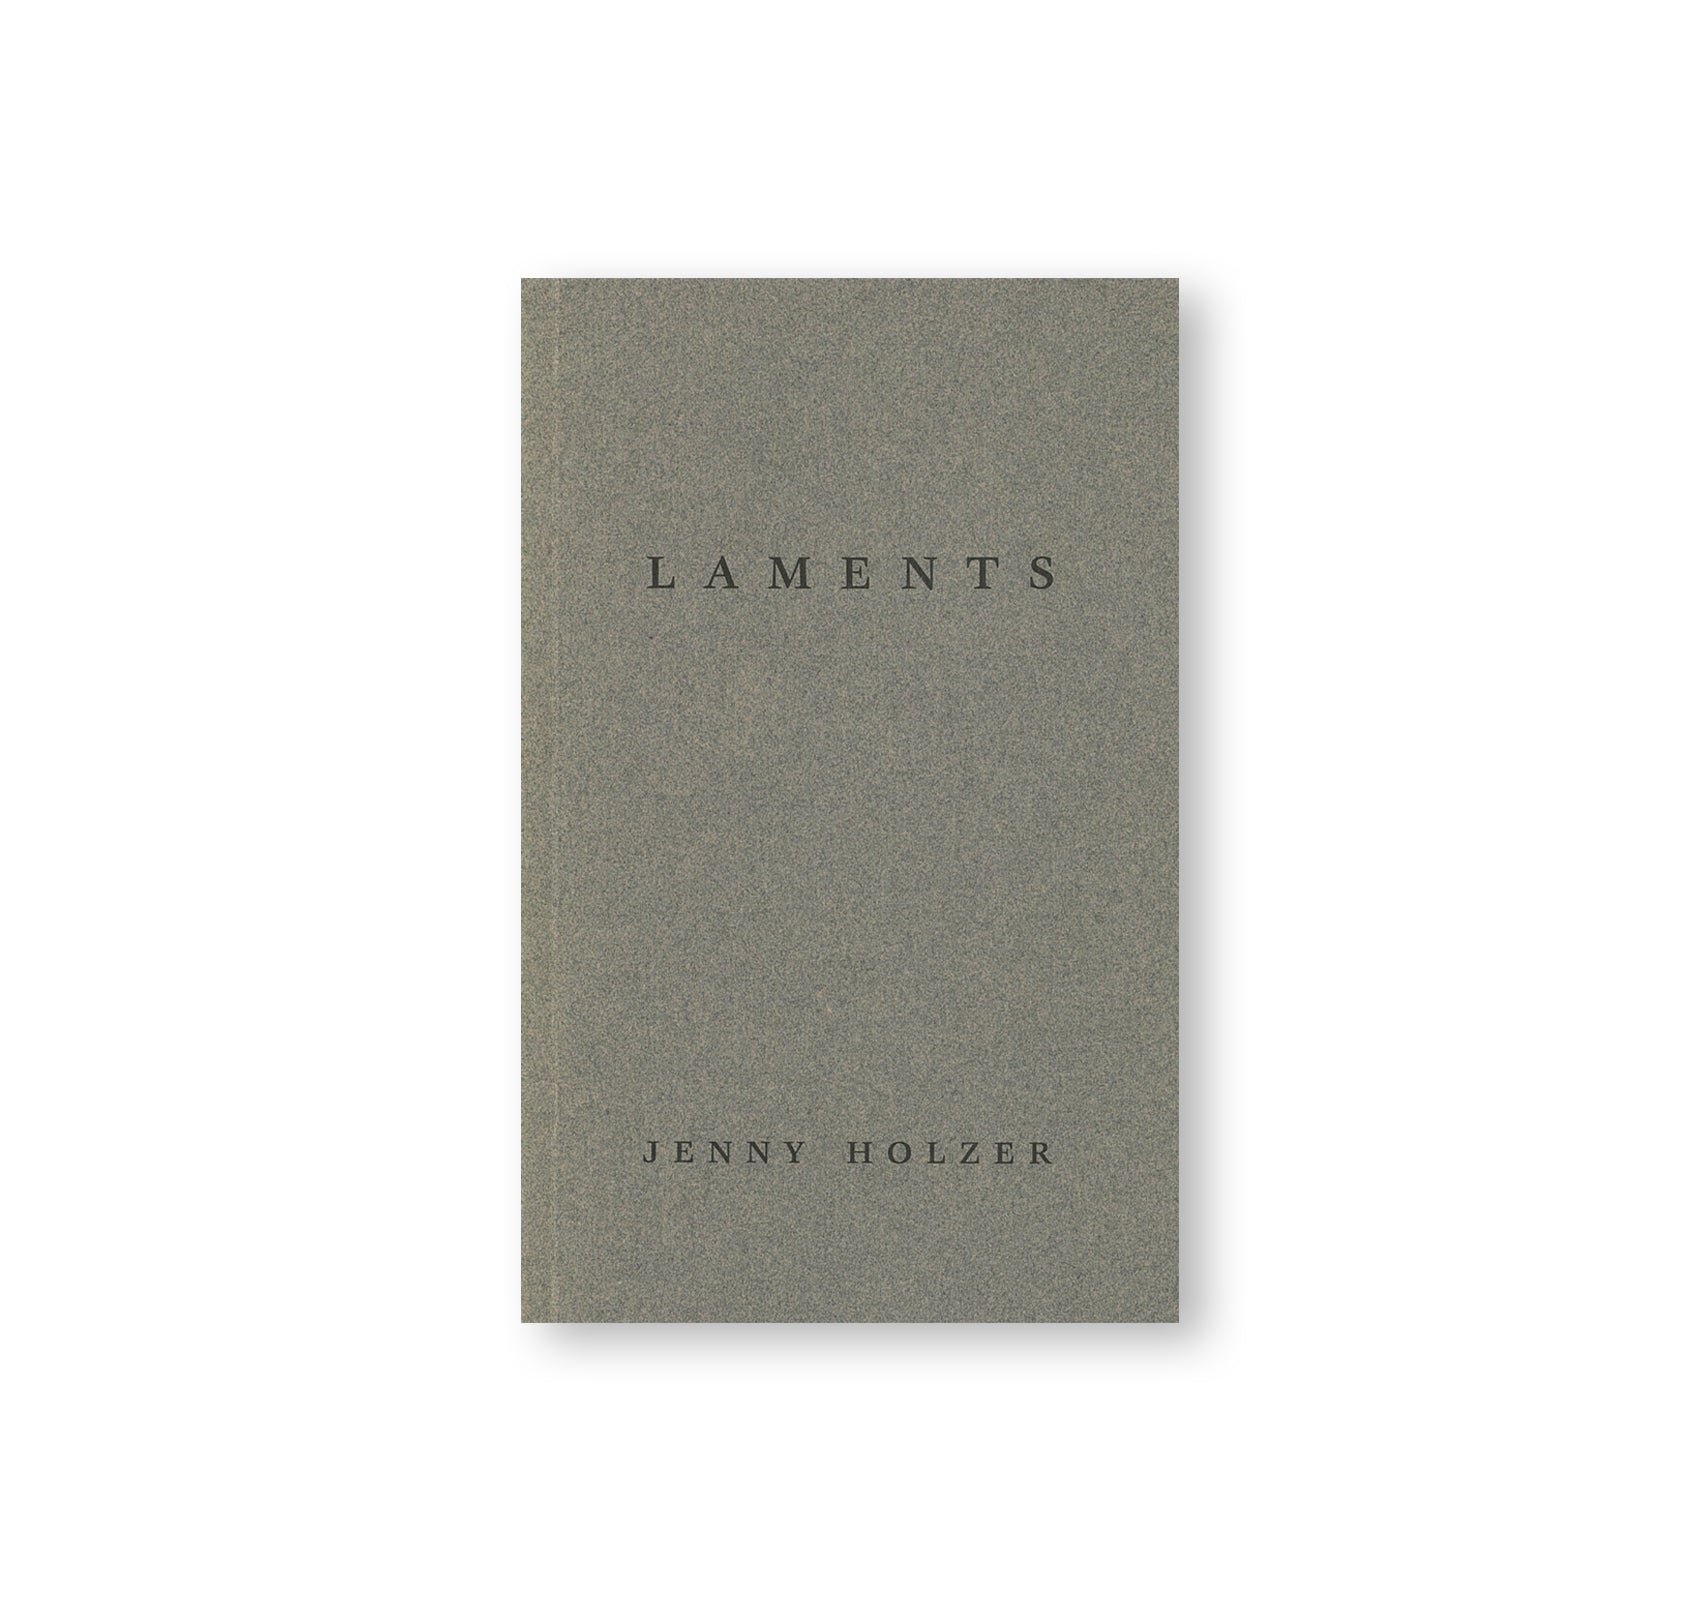 LAMENTS by Jenny Holzer